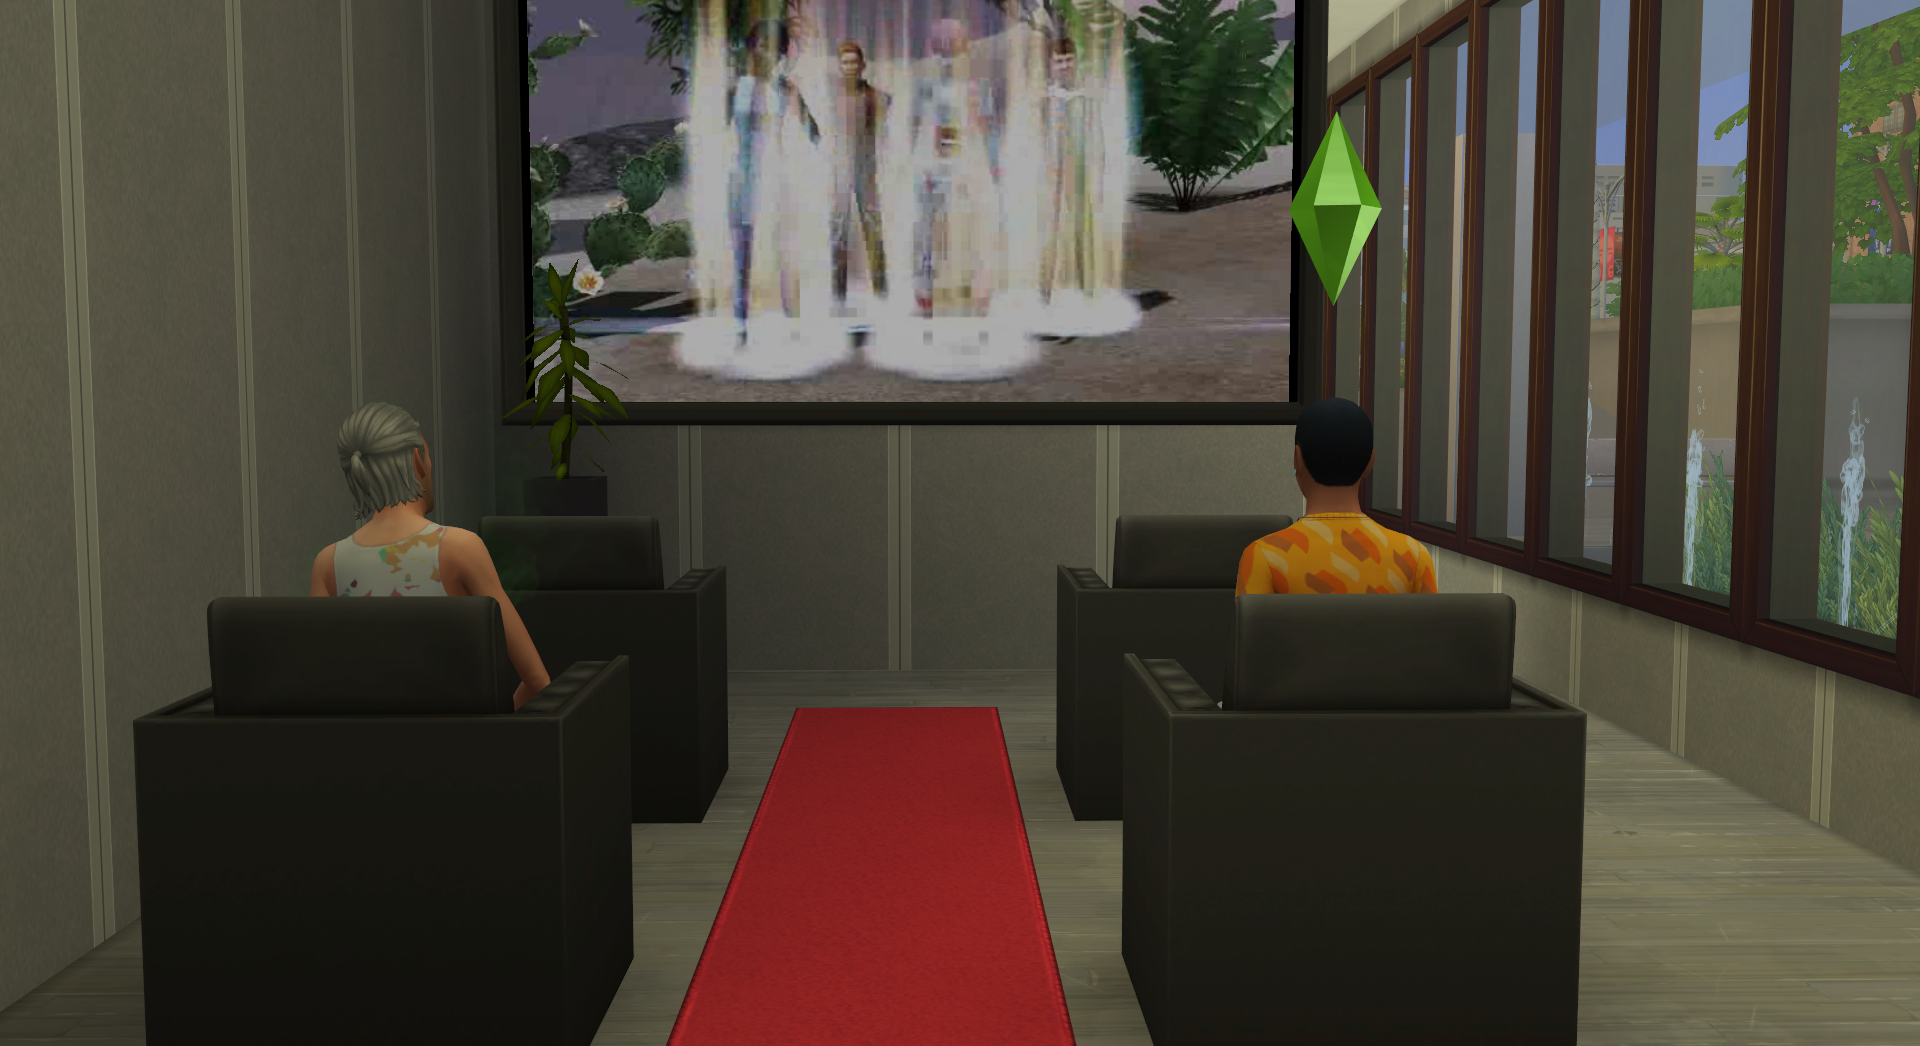 Moderna Cine-Park - The Sims 4 Catalog